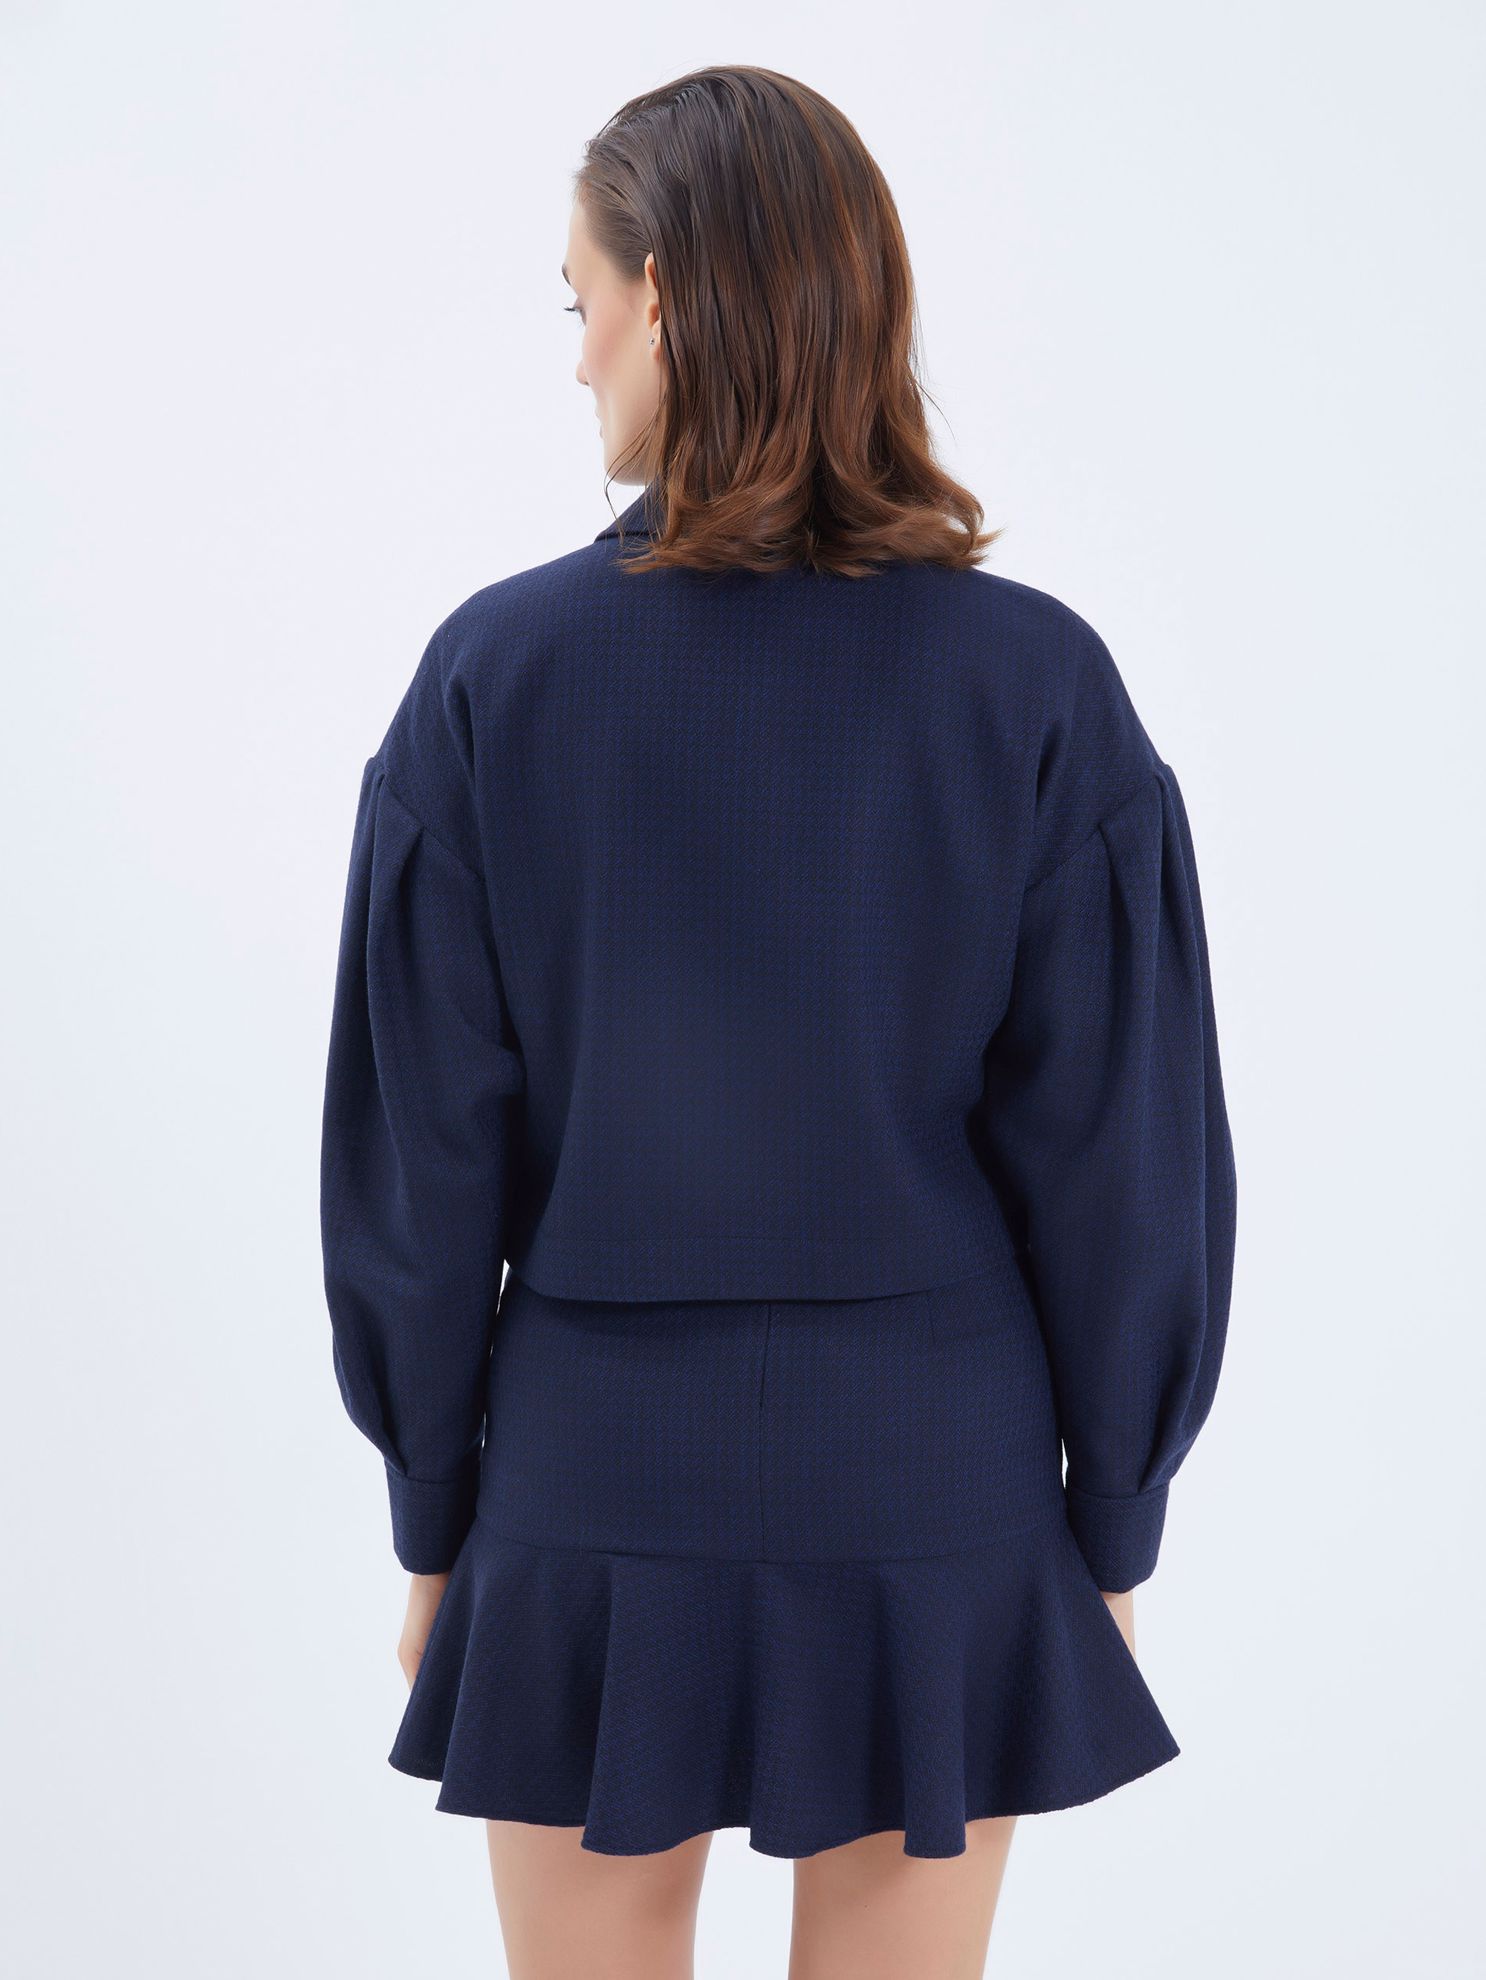 Karaca Kadın Ceket-Lacivert. ürün görseli